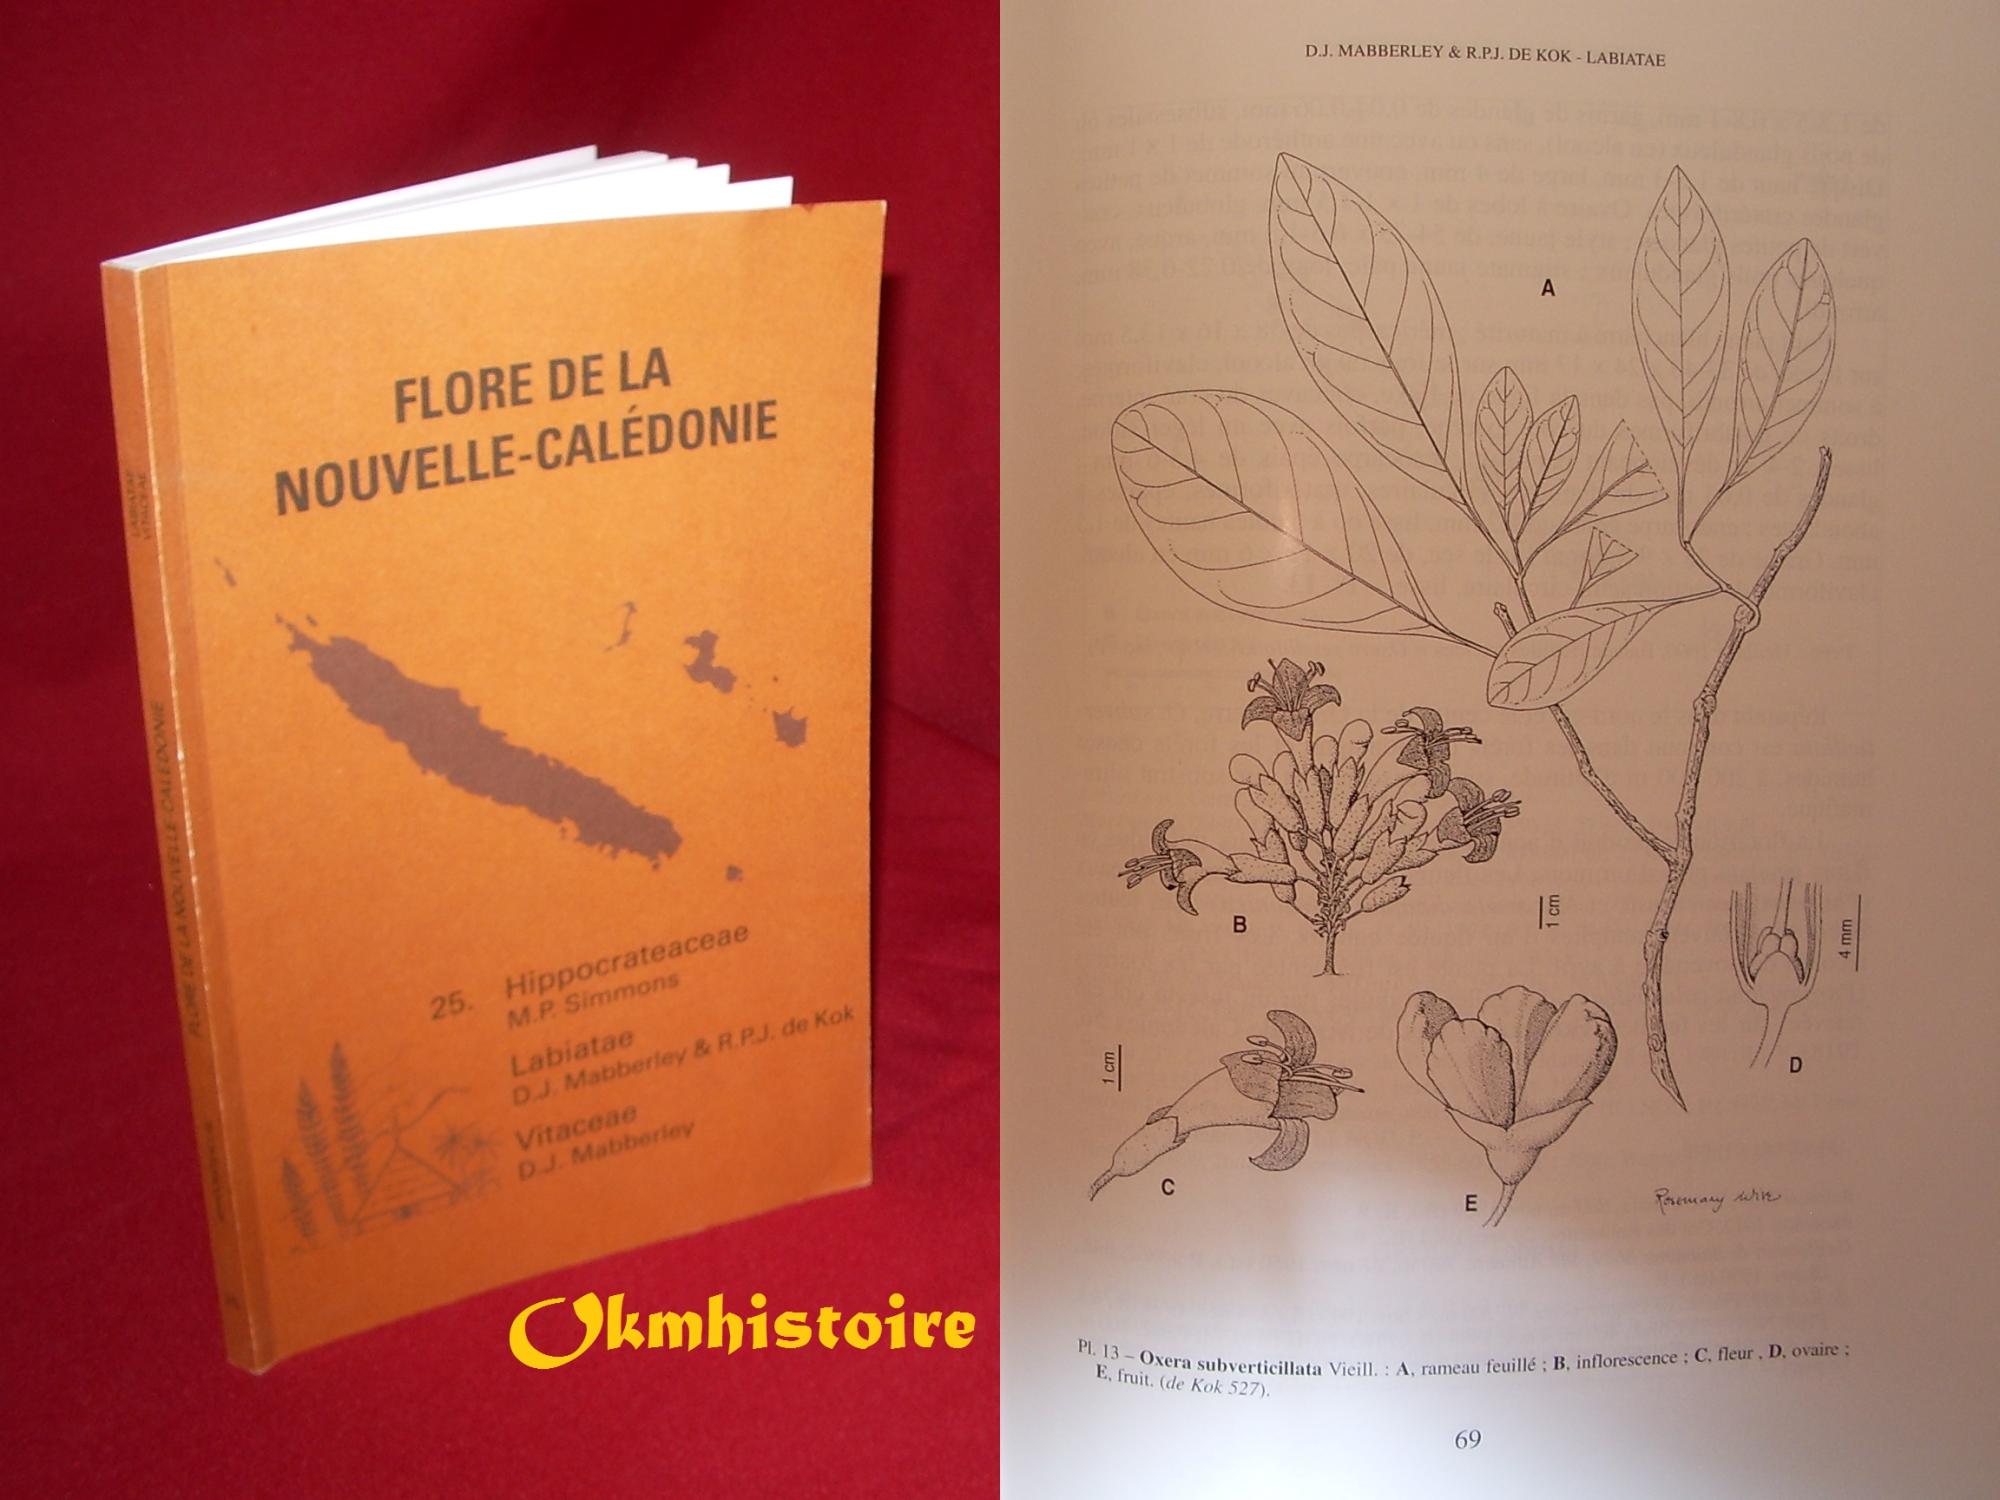 Flore de la Nouvelle-Calédonie et dépendances . ------- Volume 25 , Hippocrateaceae, Labiatae, Vitaceae - SIMMONS ( Mark P. ) & MABBELEY ( D. J. ) & DE KOK ( Rogier P. J. ) [ Sous la Dir. de Ph. MORAT ]